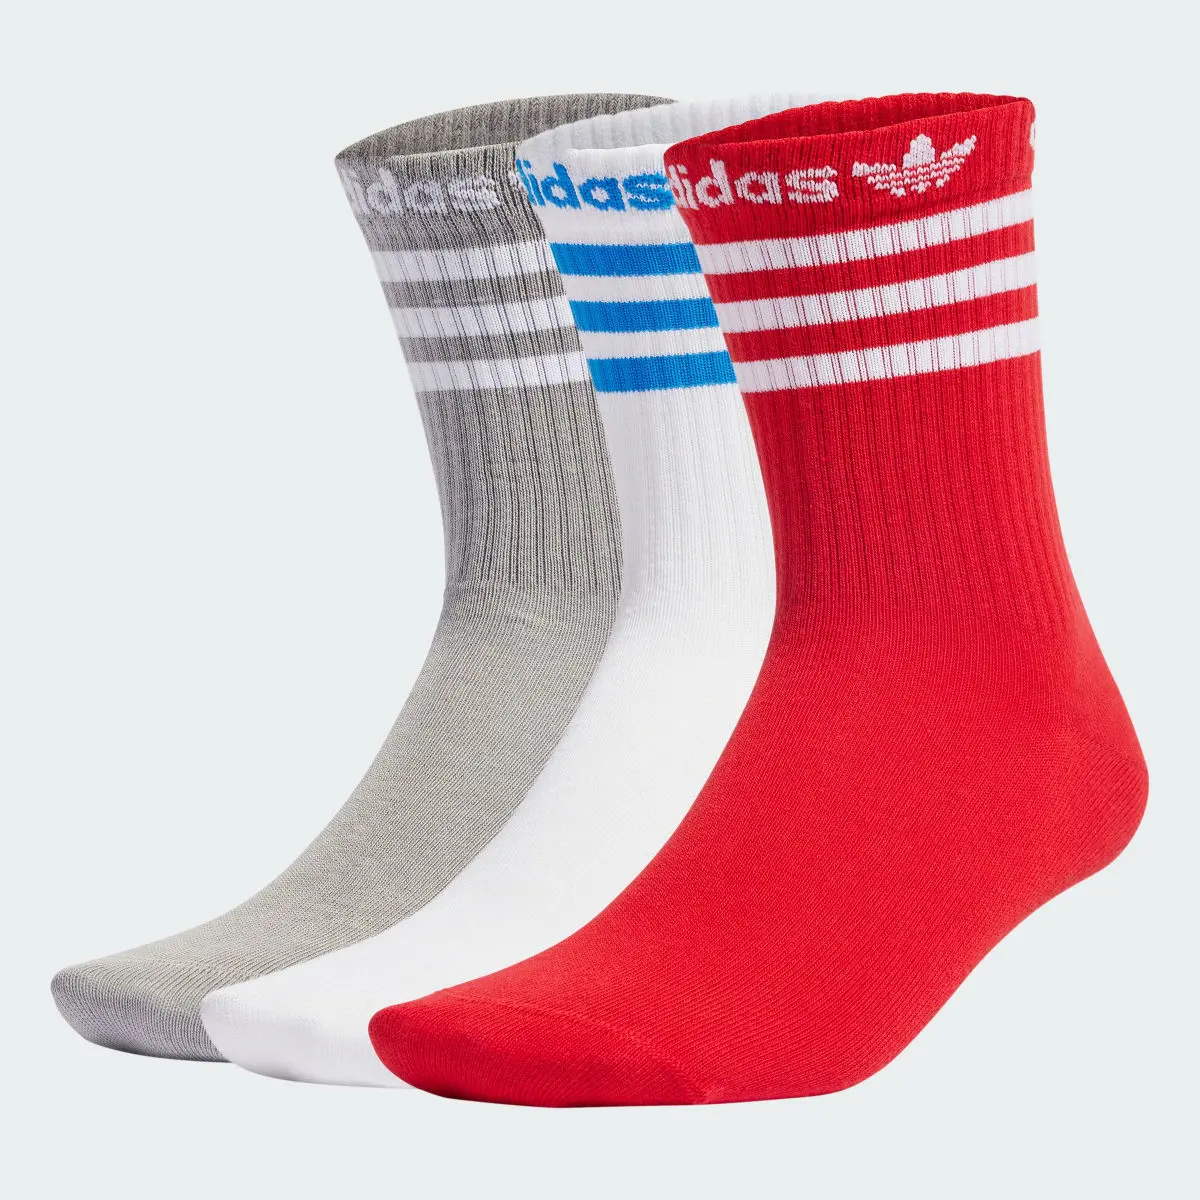 Adidas Crew Socks 3 Pairs. 2